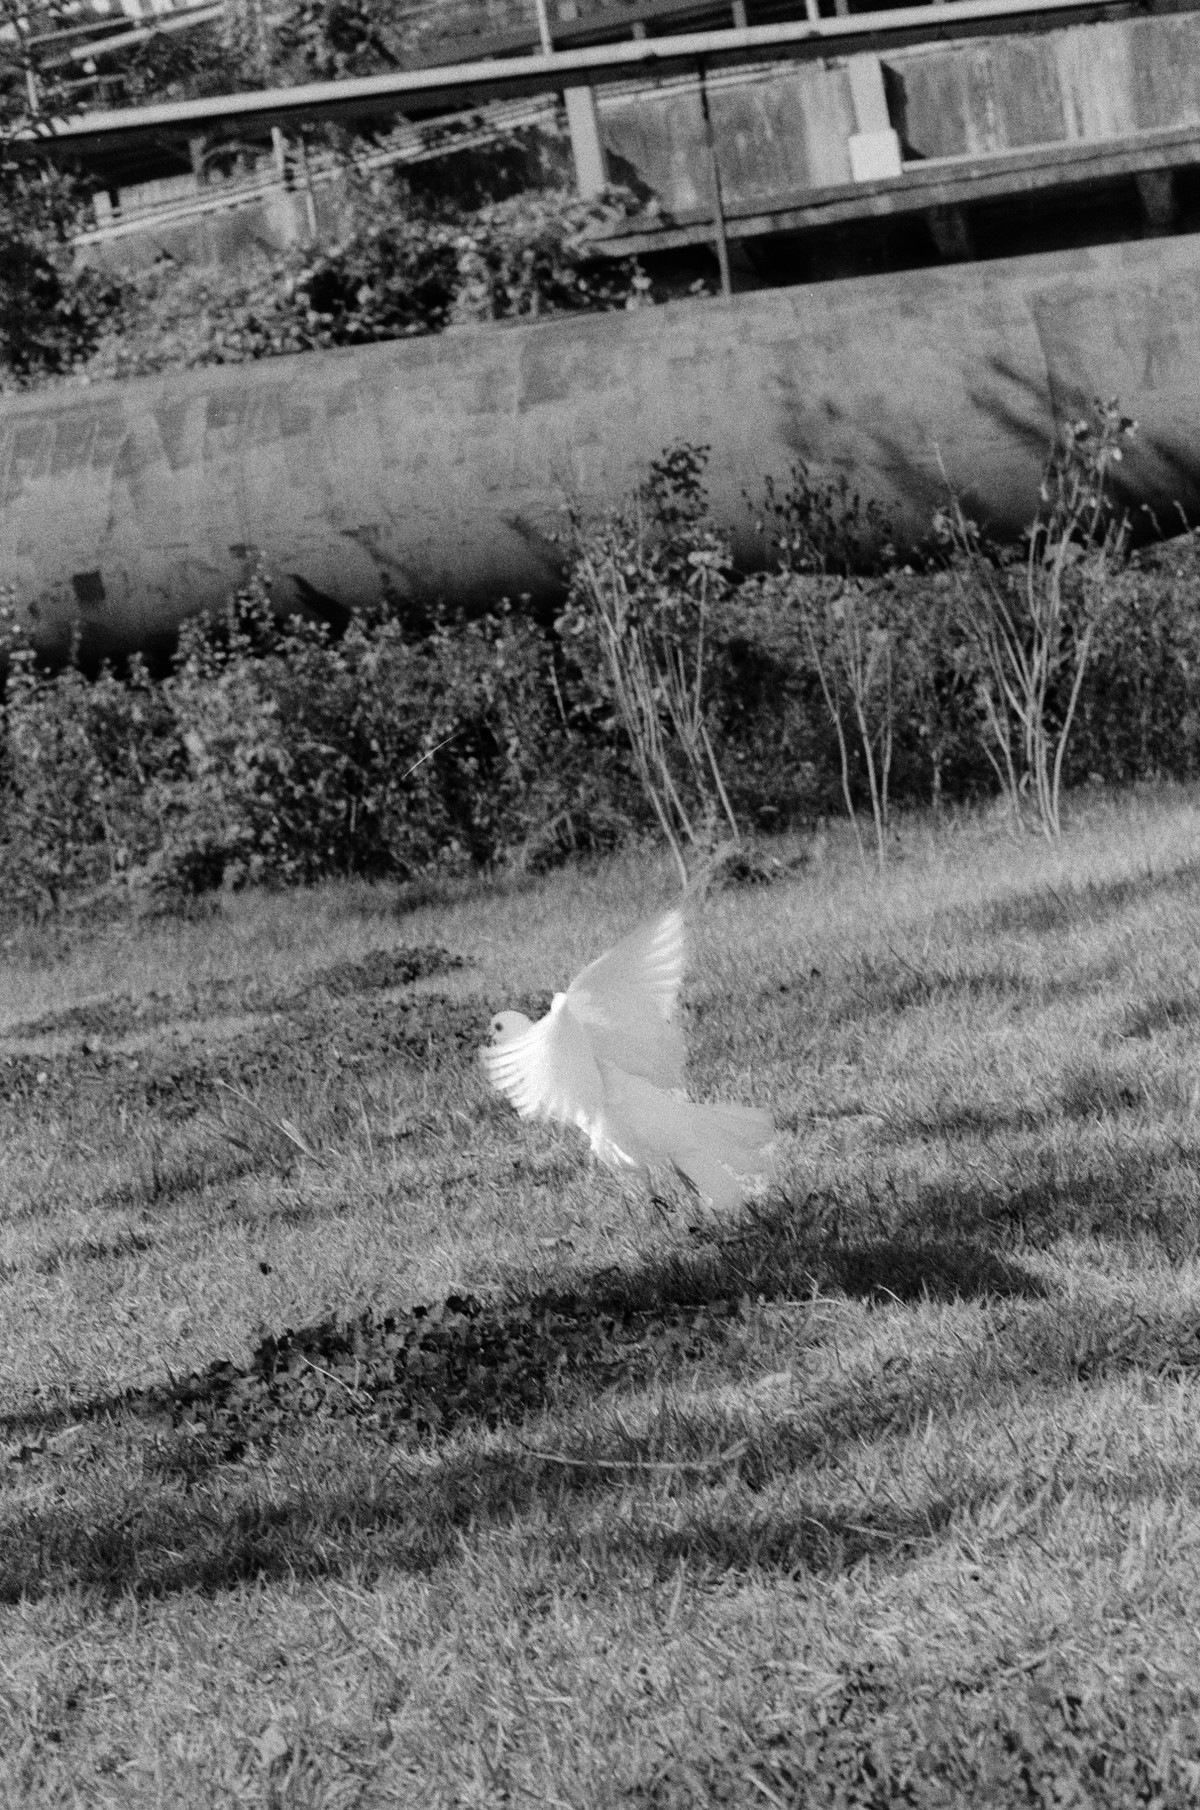 풀밭에서 흰색의 비둘기가 막 날갯짓을 하며 날아오르려 한다.